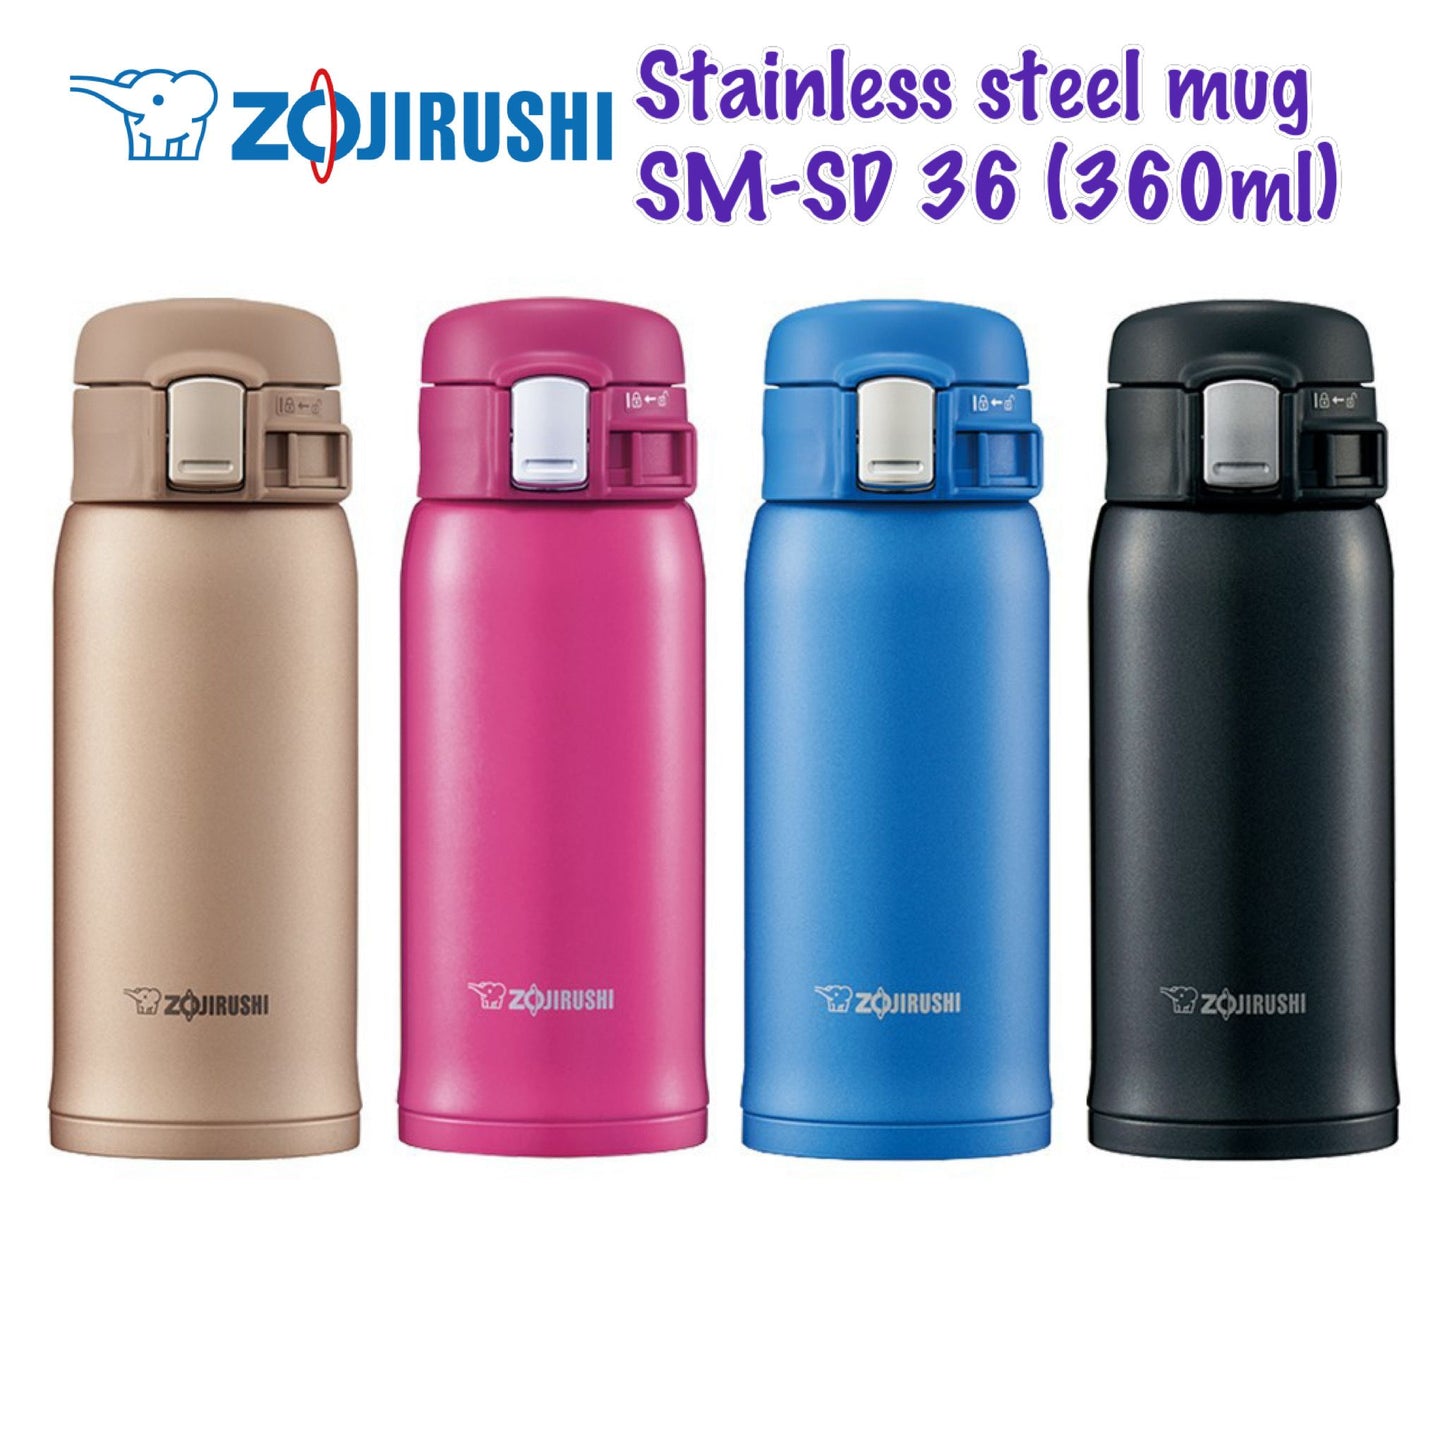 Zojirushi Stainless Metal SM-SD36